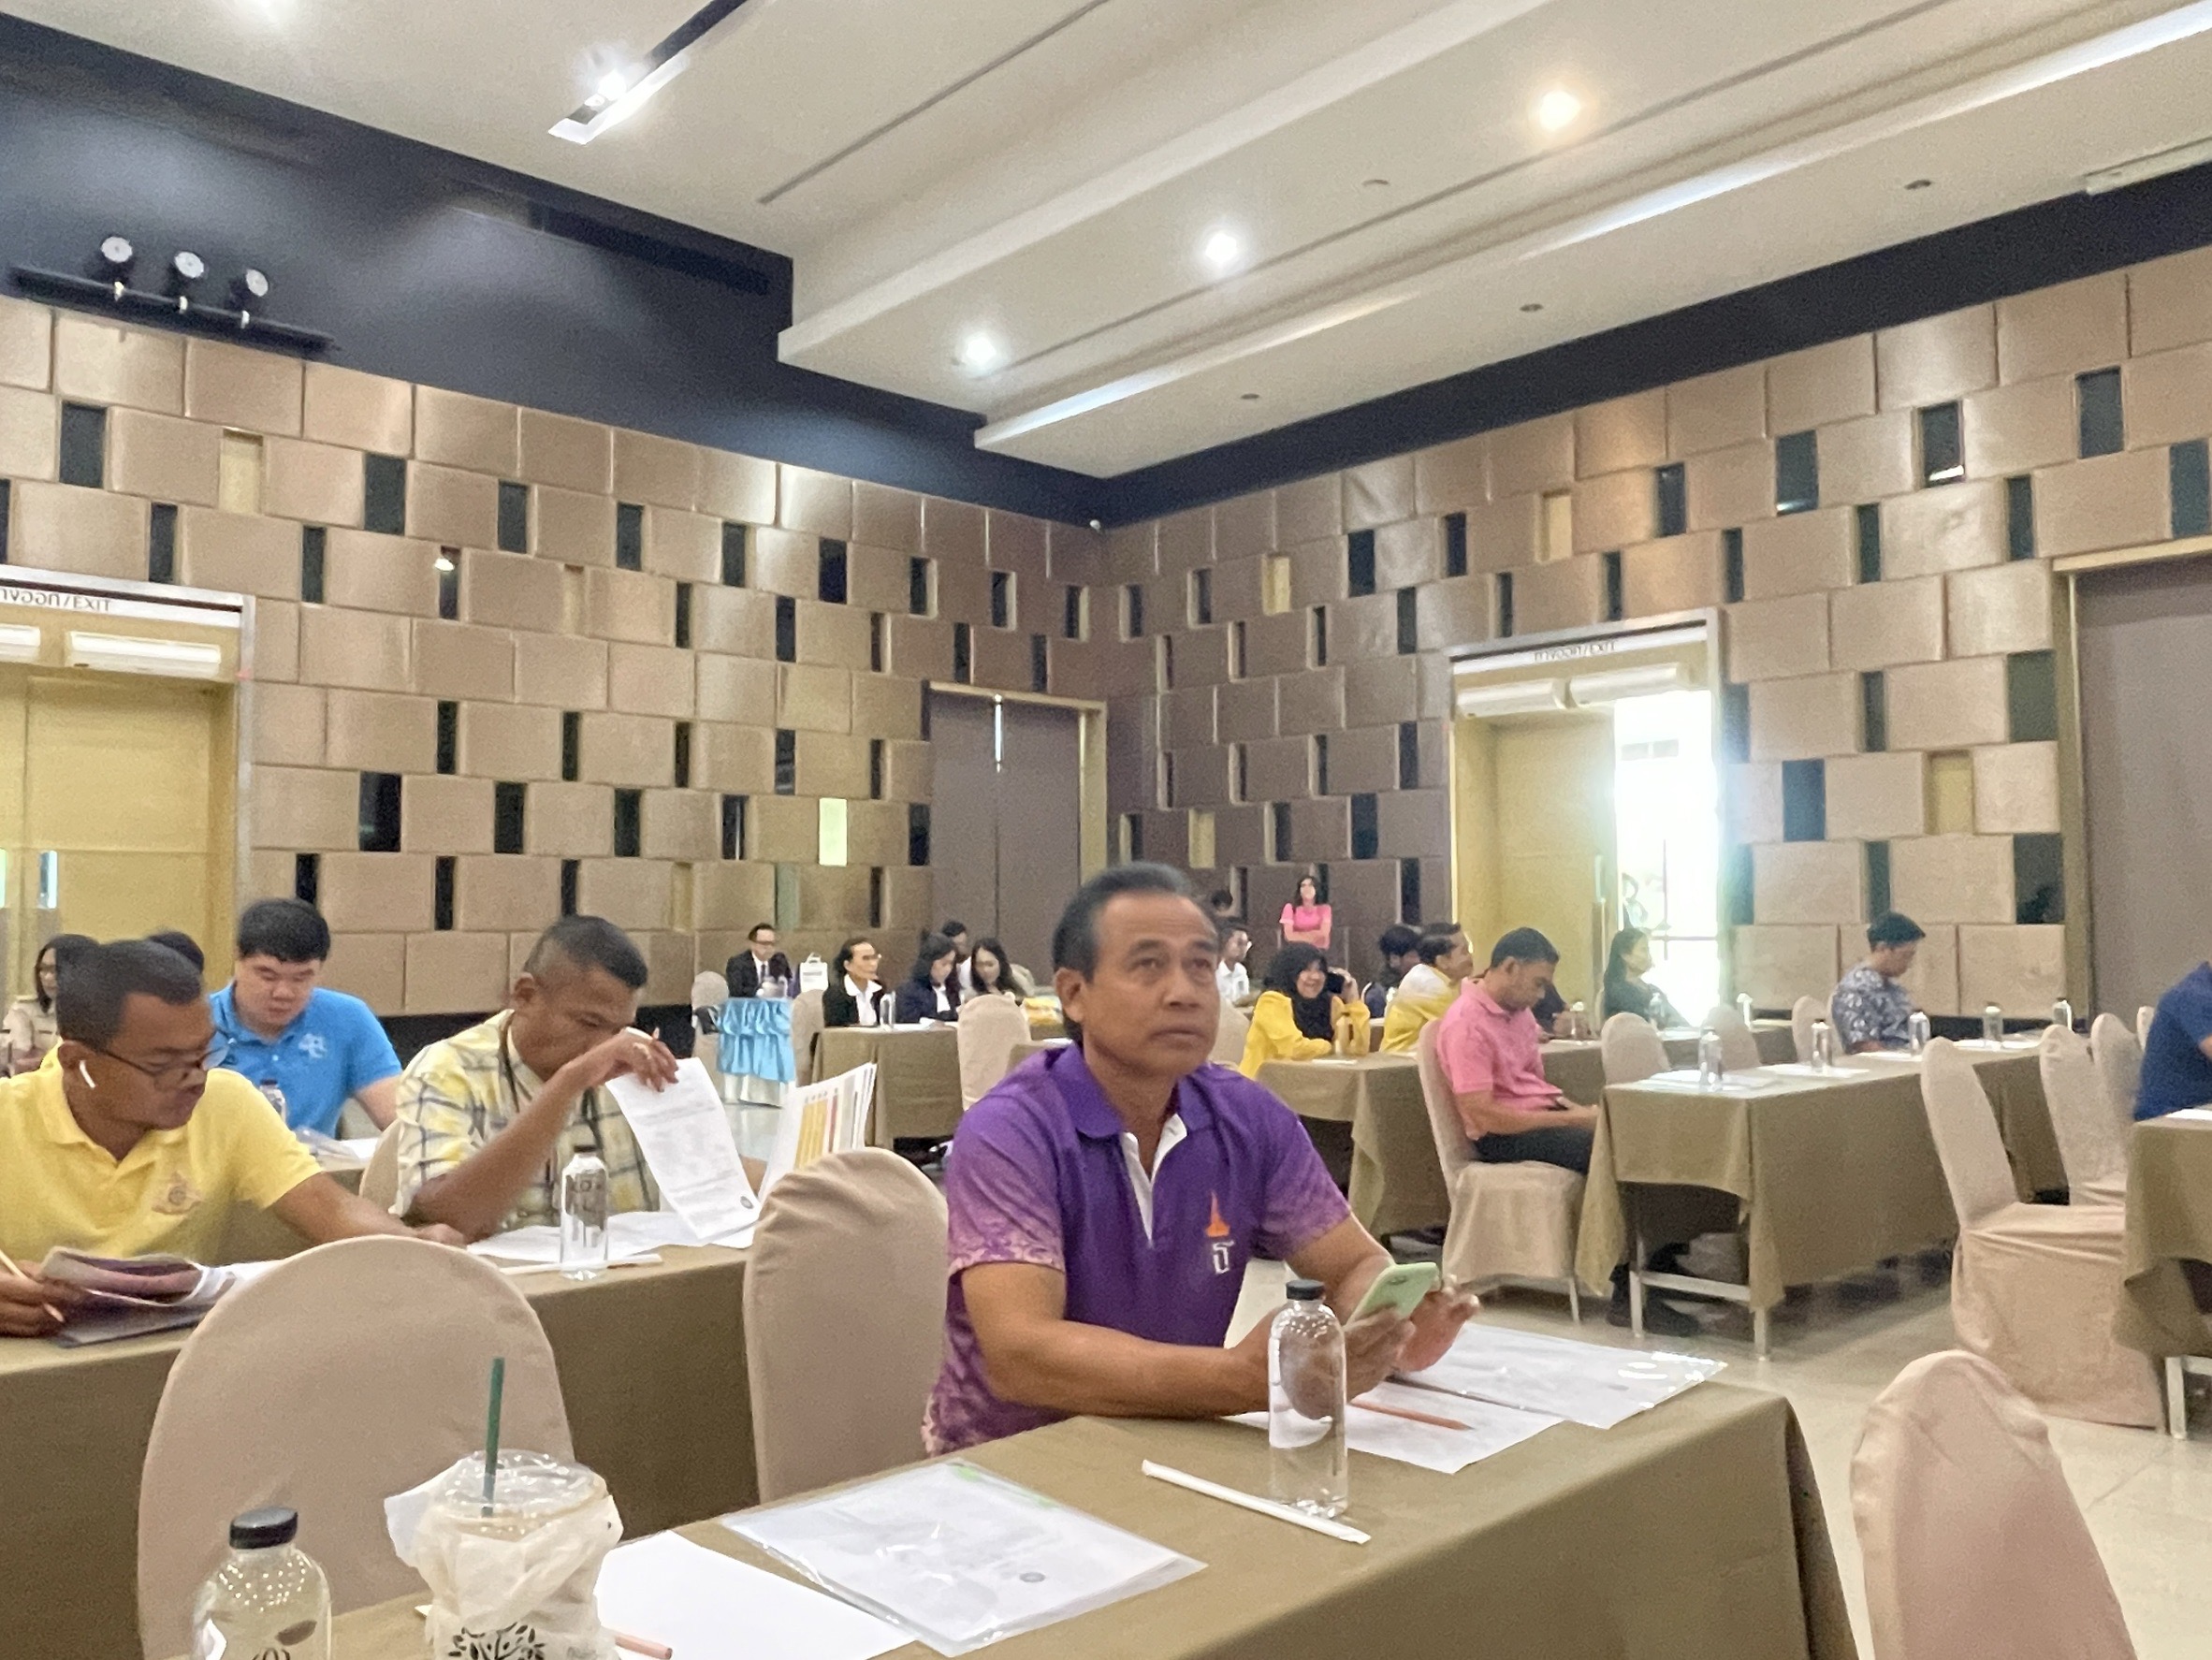 วันที่ 16 กรกฎาคม  2567
นายอมฤต นิจอาคม นายกองค์การบริหารส่วนตําบลท่าข้าม เข้าร่วมการประชุมเชิงปฏิบัติการ ครั้งที่ 1 โครงการพัฒนาพื้นที่กลุ่มจังหวัดภาคใต้ฝั่งอ่าวไทย จังหวัดสุราษฎร์ธานี โดยองค์การบริหารส่วนตำบลท่าข้าม ได้รับการคัดเลือกเป็นพื้นที่โครงการดังกล่าว เป็นพื้นที่ต้นแบบ